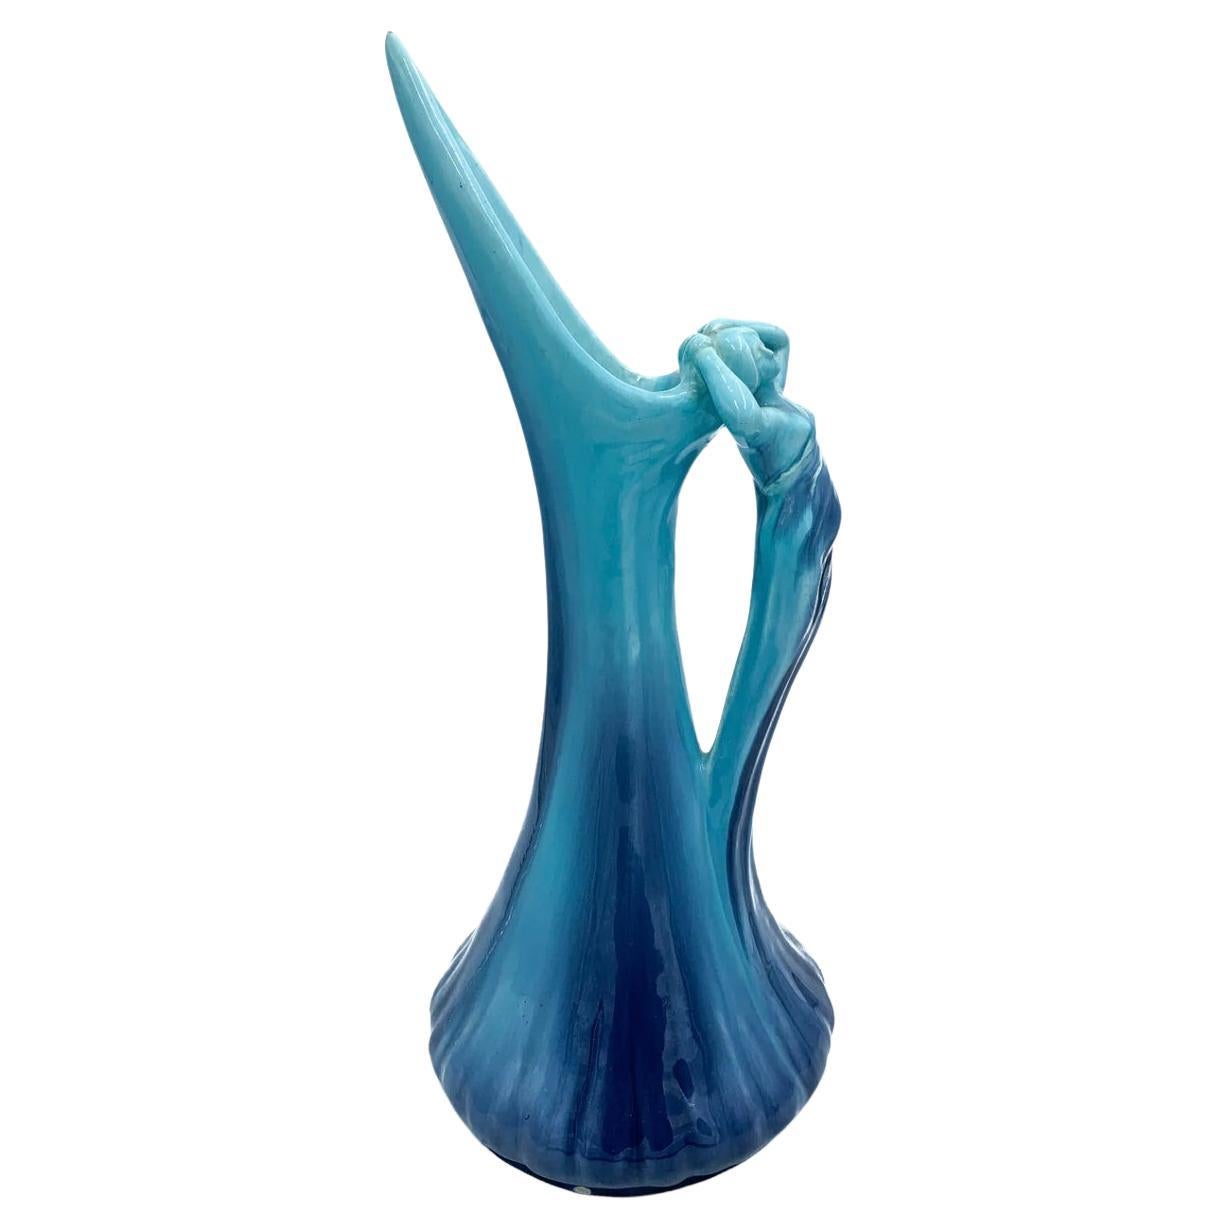 Der blaue Keramikkrug Vallauris aus den 1950er Jahren